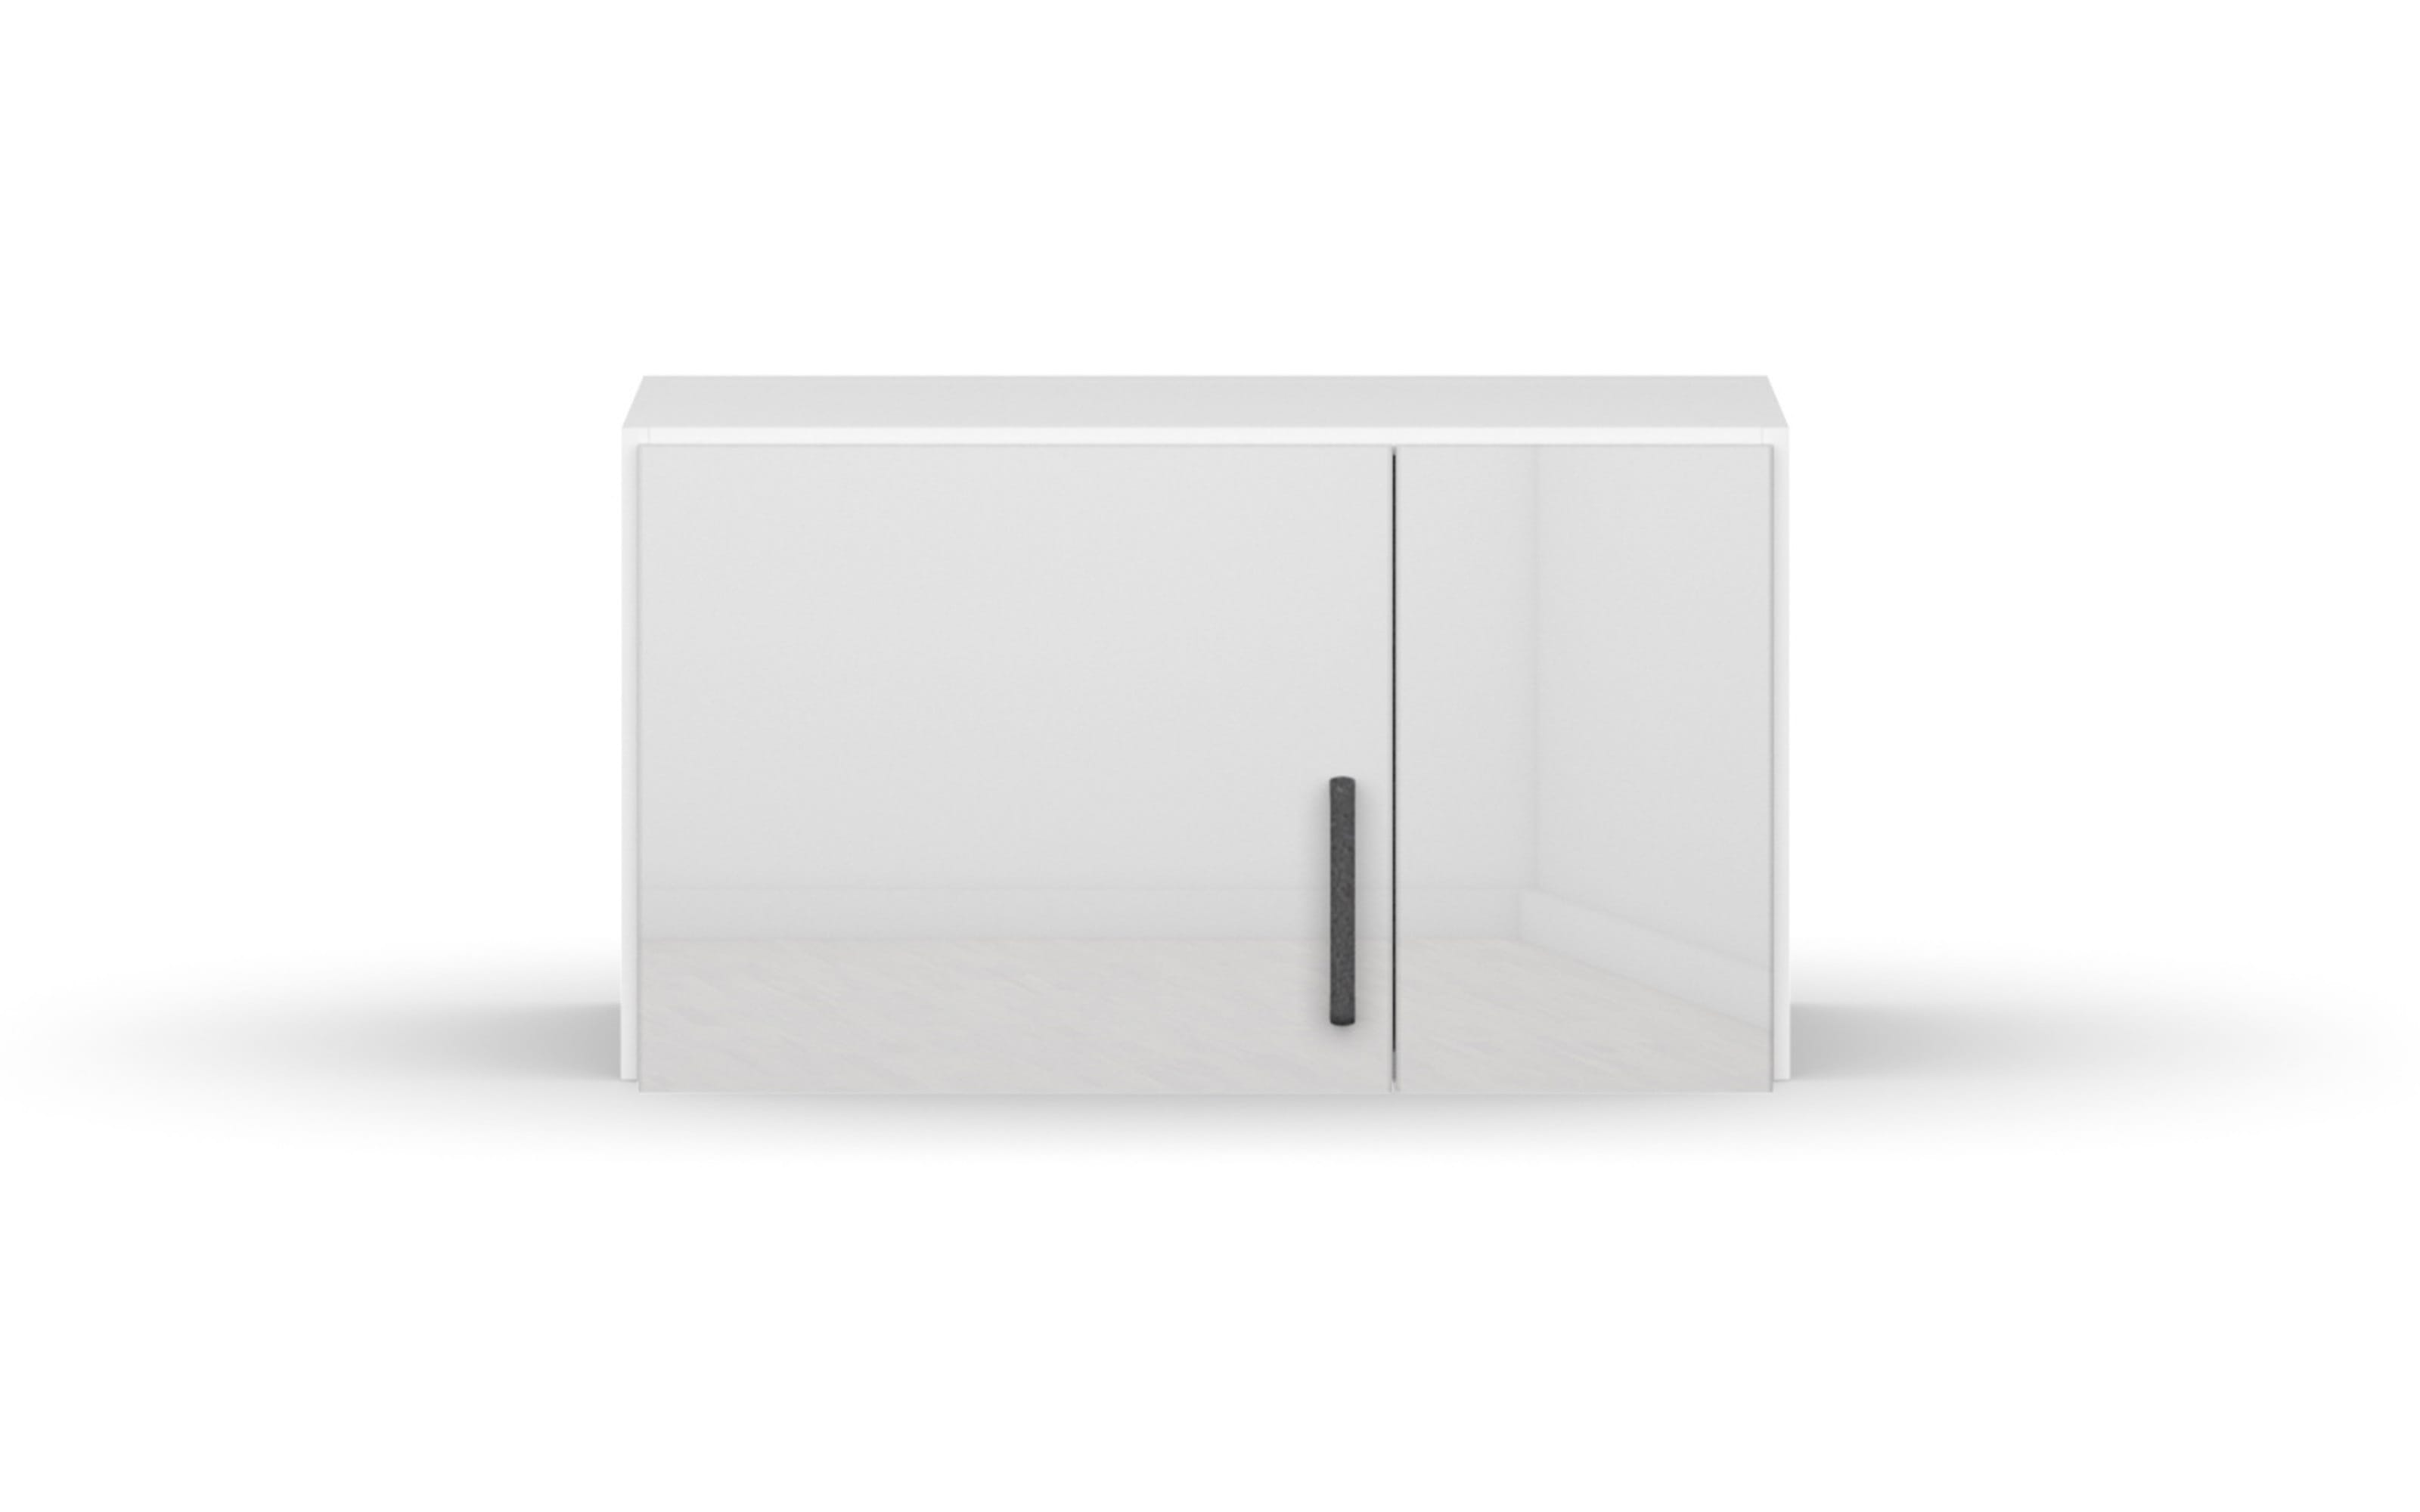 Aufsatzelement 3354 Allrounder, weiß, 69 x 39 cm